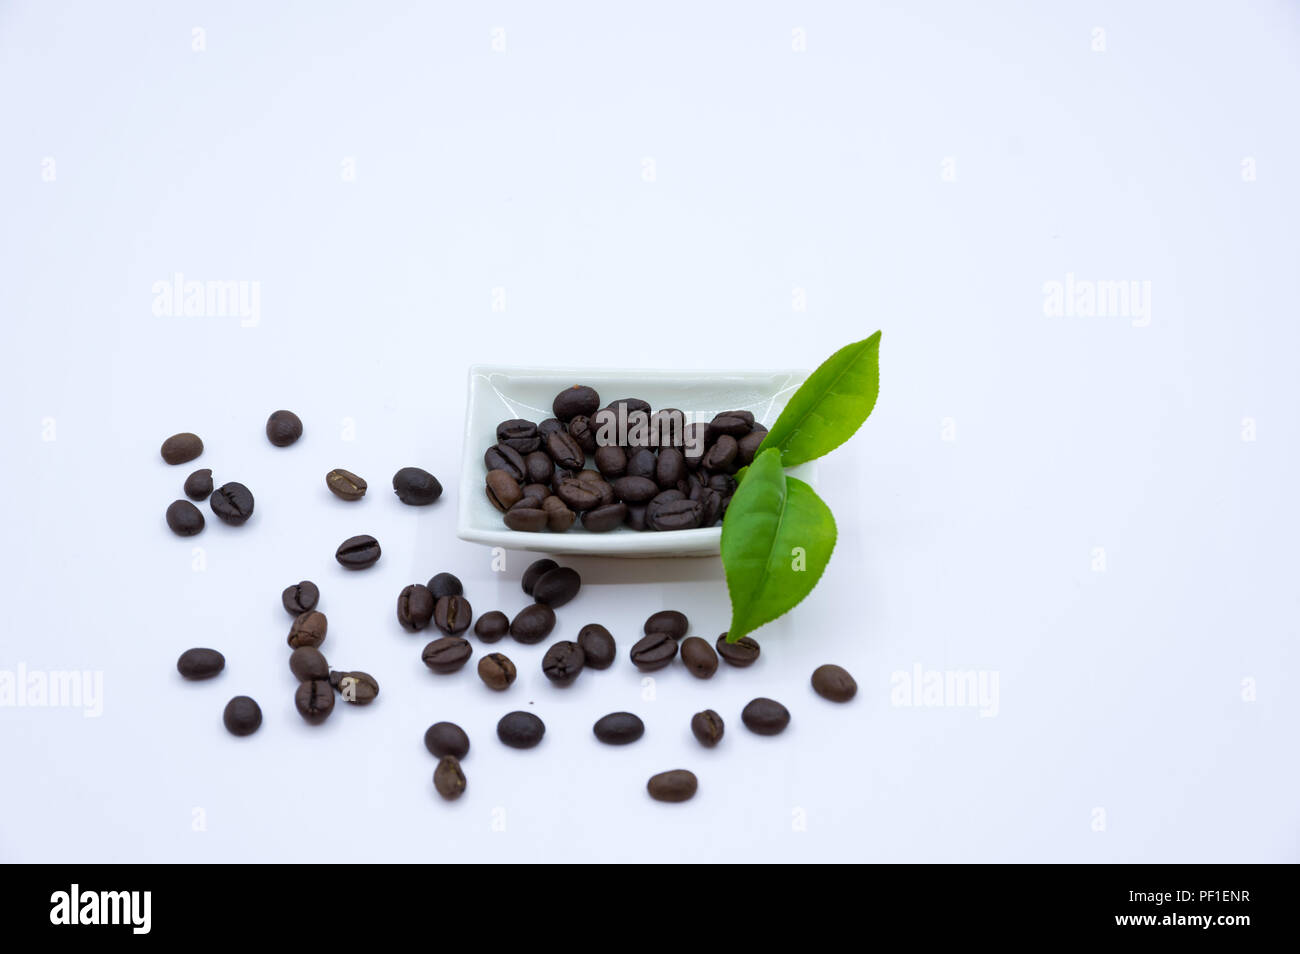 Le immagini utilizzate nel design, pubblicità sul set di preparazione per tè e caffè. Che fa parte della cultura dei popoli asiatici. Non solo usato per bere, è sia un'arte e vita Foto Stock